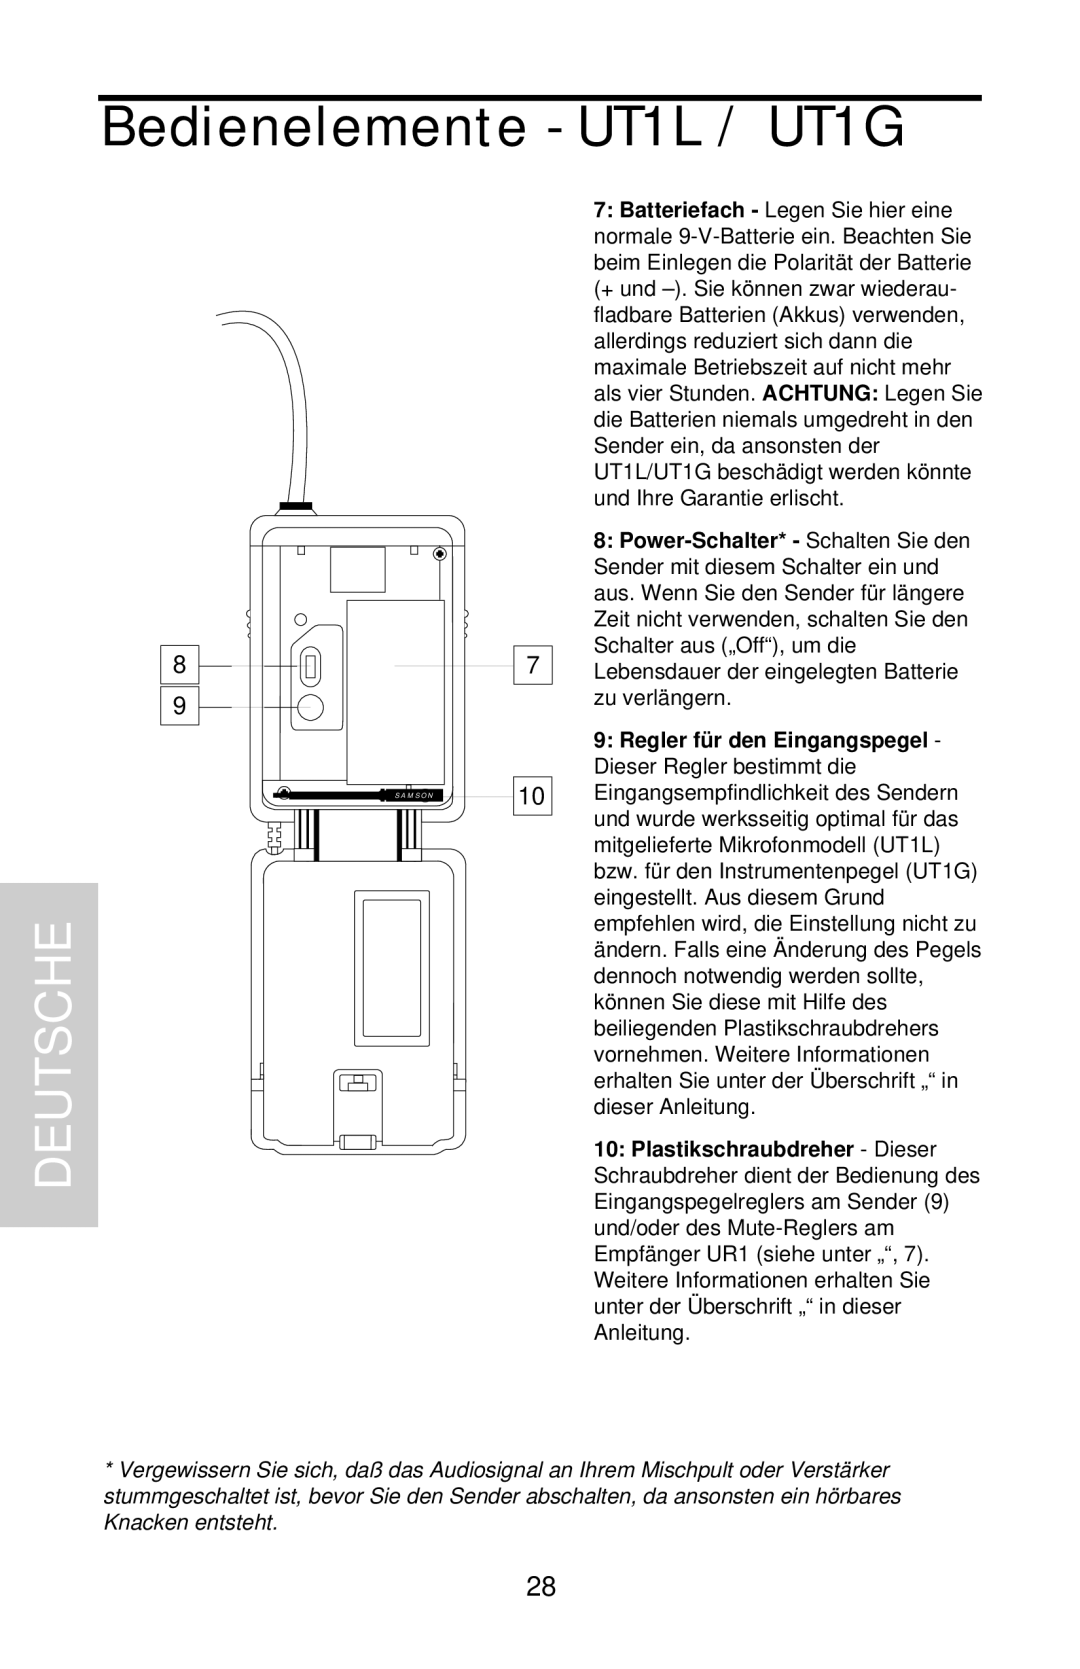 Samson UHF 801 owner manual Bedienelemente - UT1L / UT1G, Deutsche 